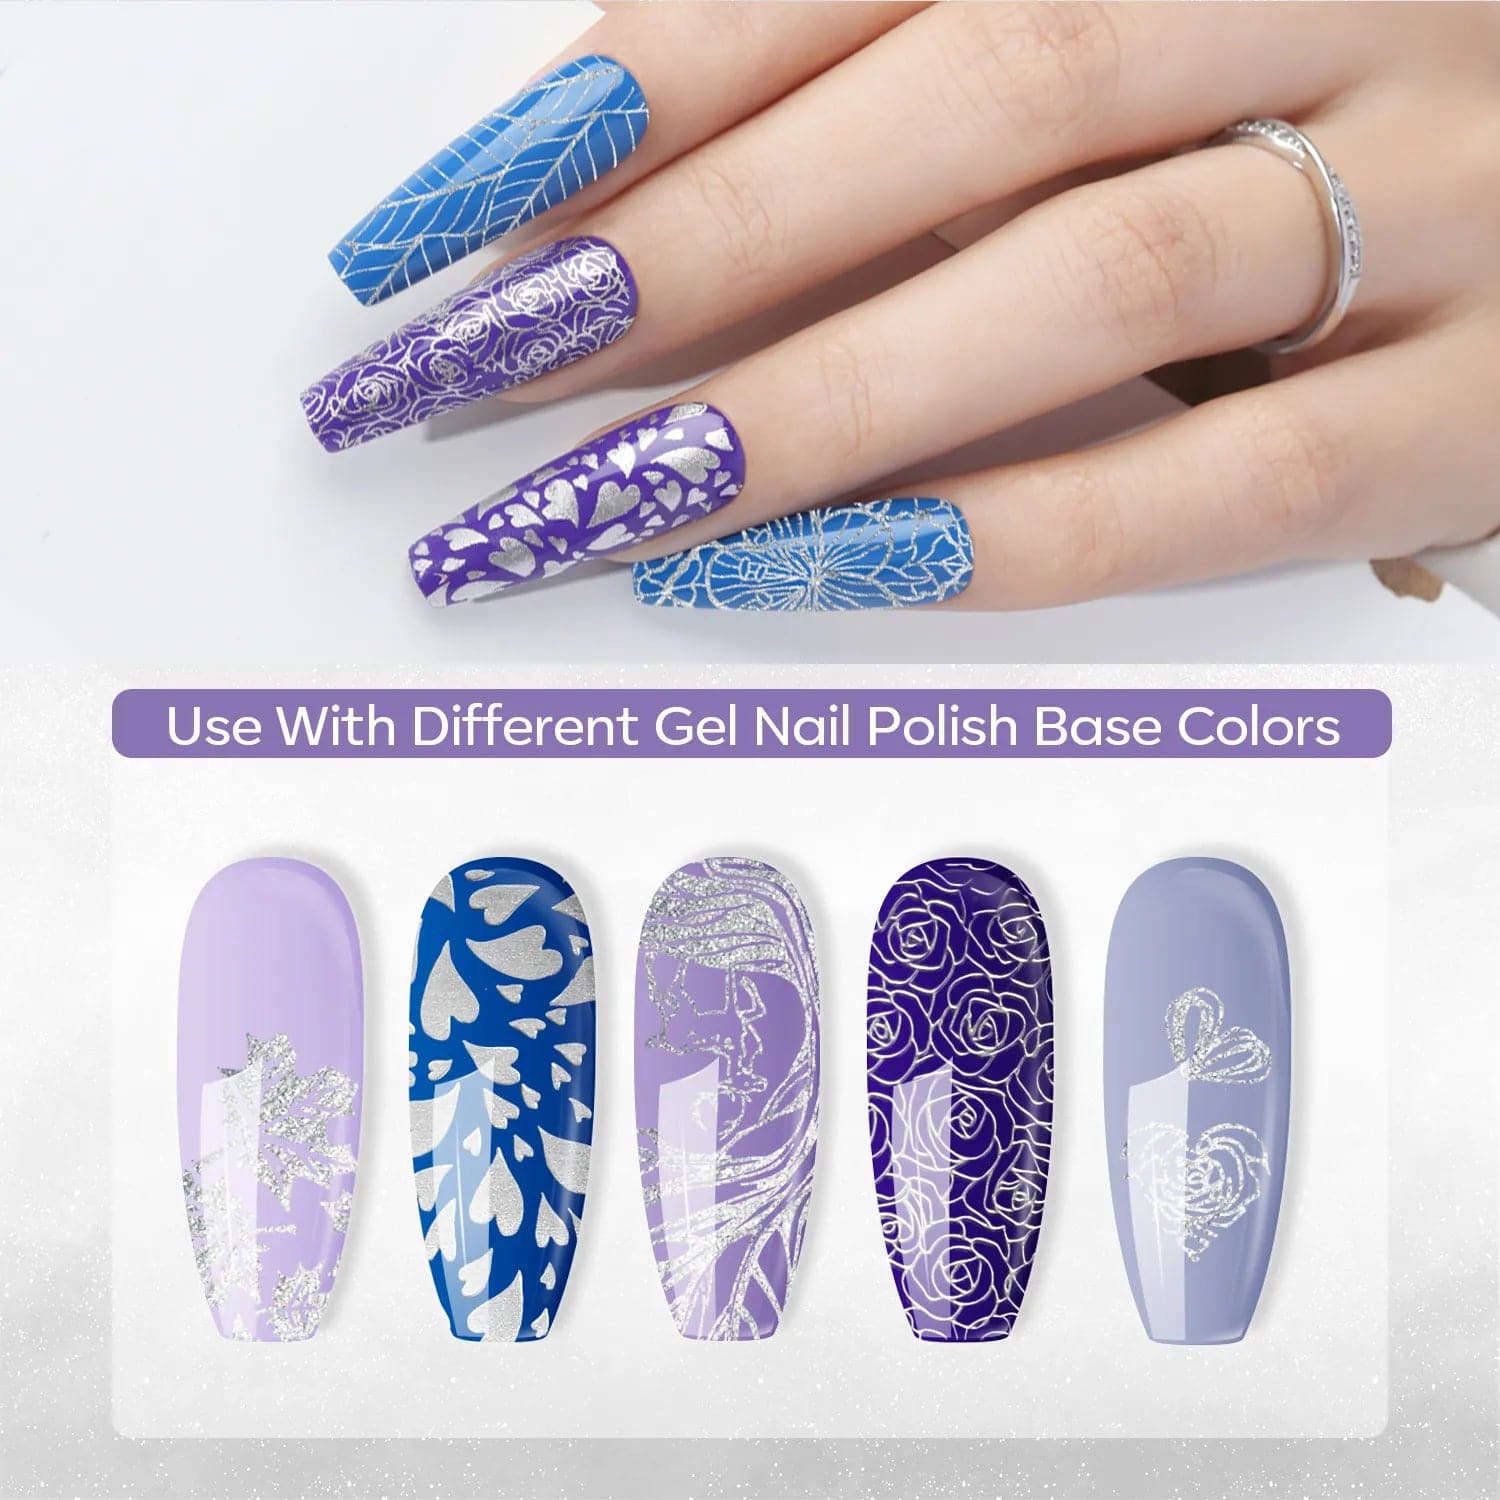 Stamping Nail Polish Collection for DIY Nail Designs